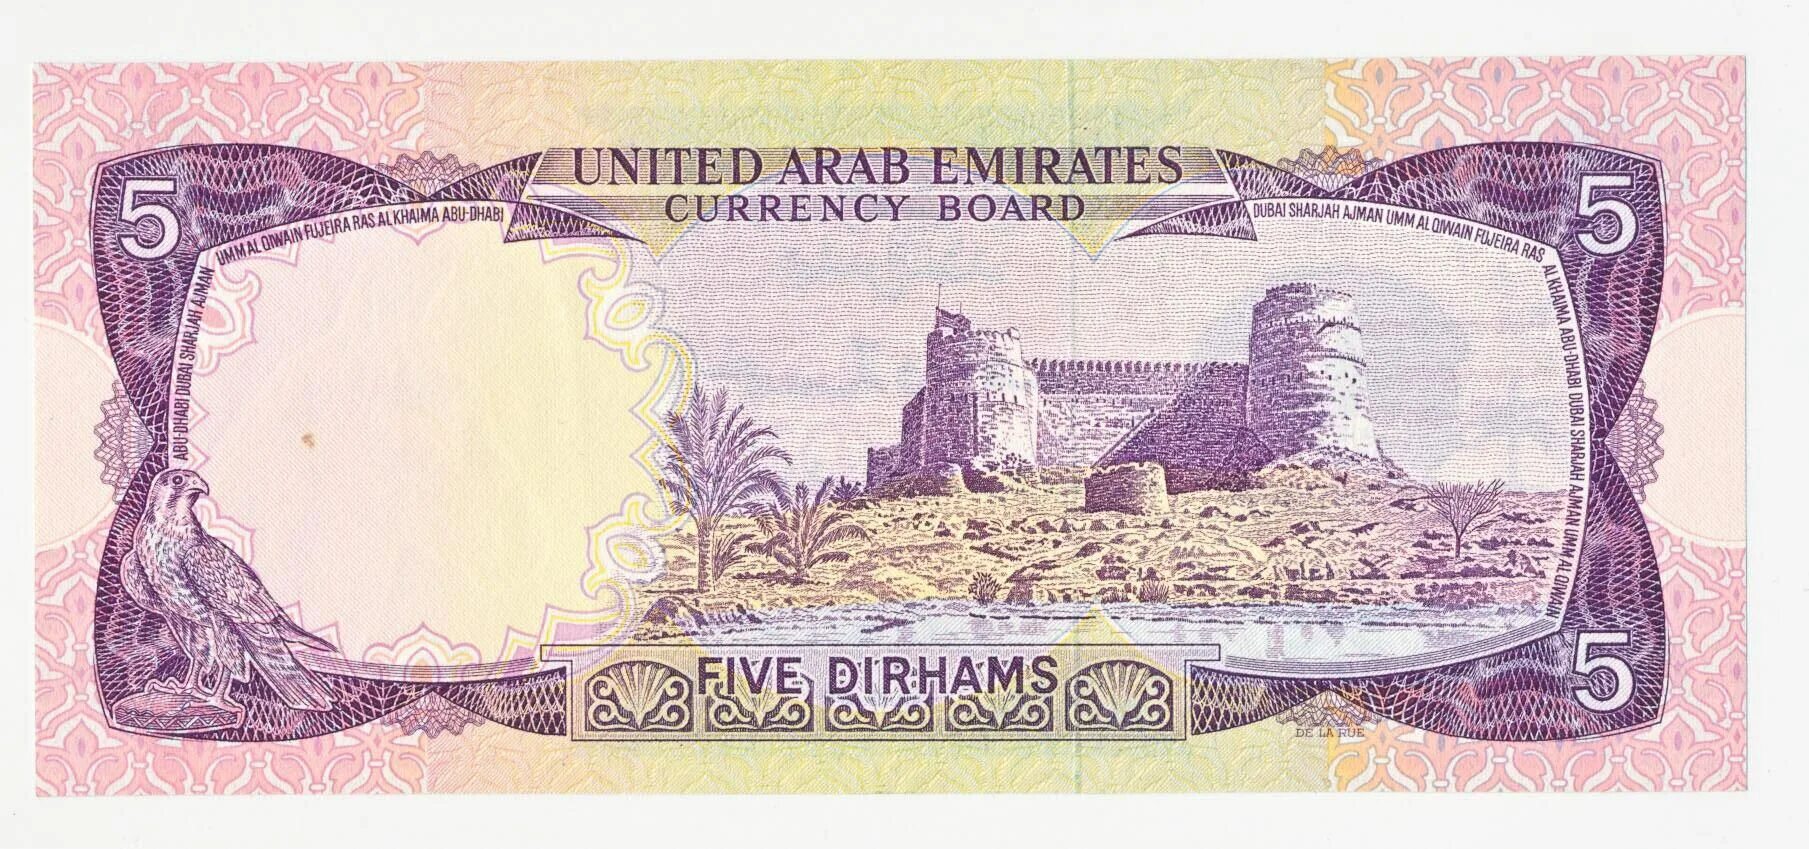 5 Дирхам арабские эмираты. 100 Дирхам купюра. Five dirhams купюра. Банкноты United arab Emirates,2008, 50 dirhams.